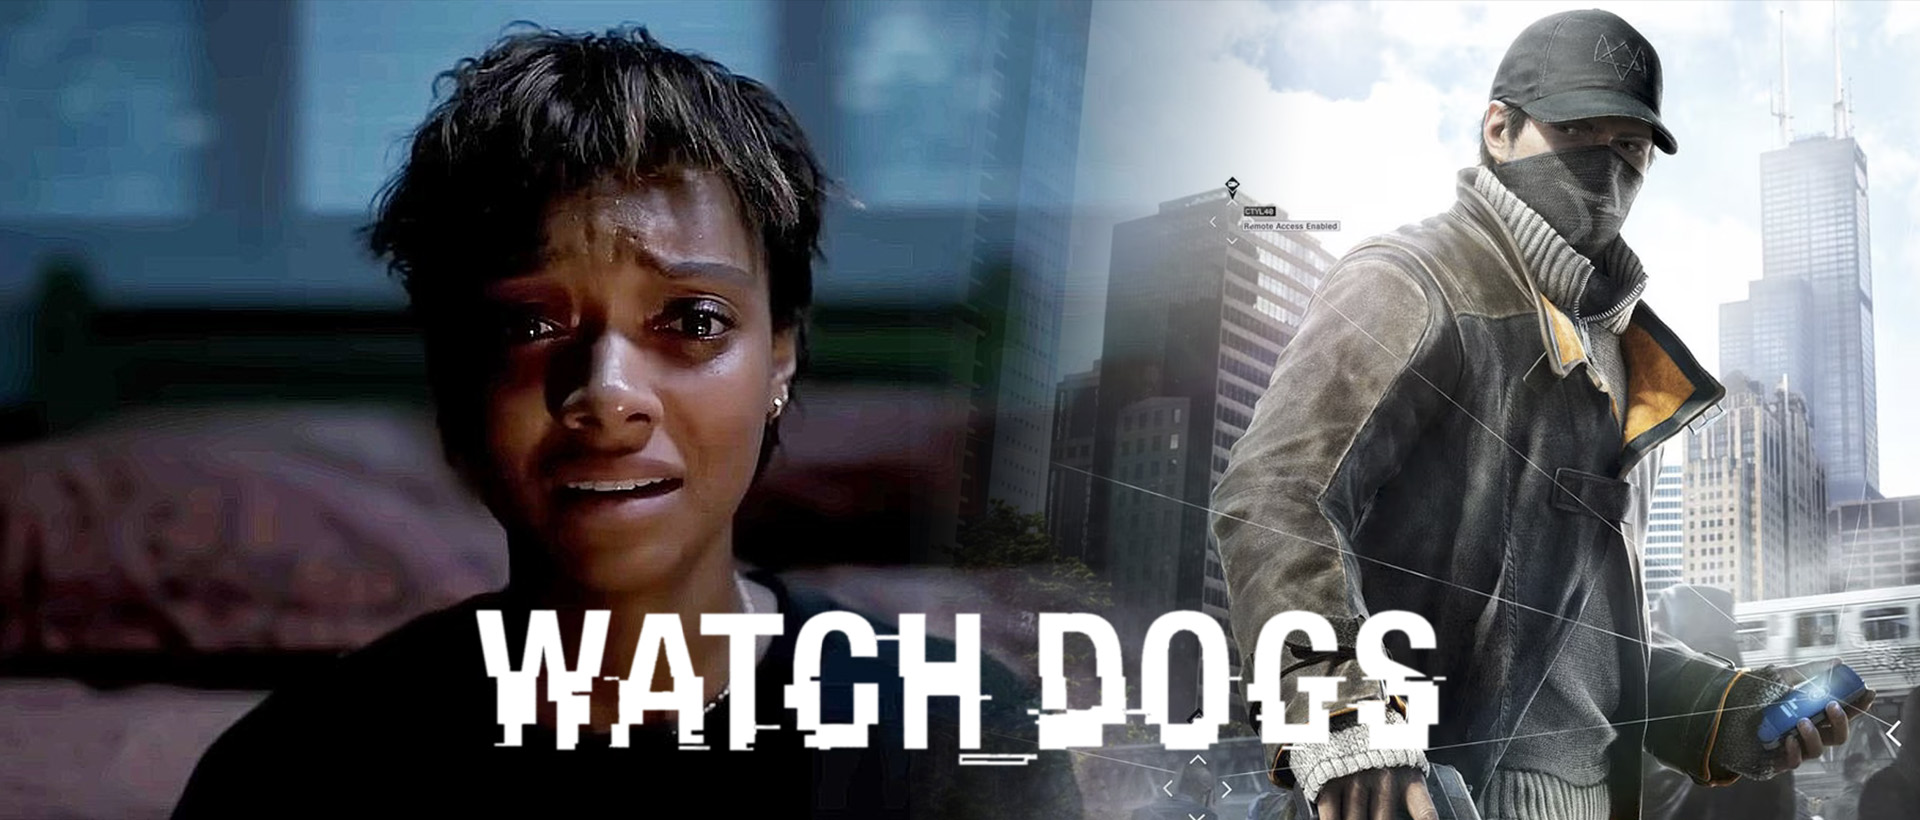 فیلم Watch Dogs